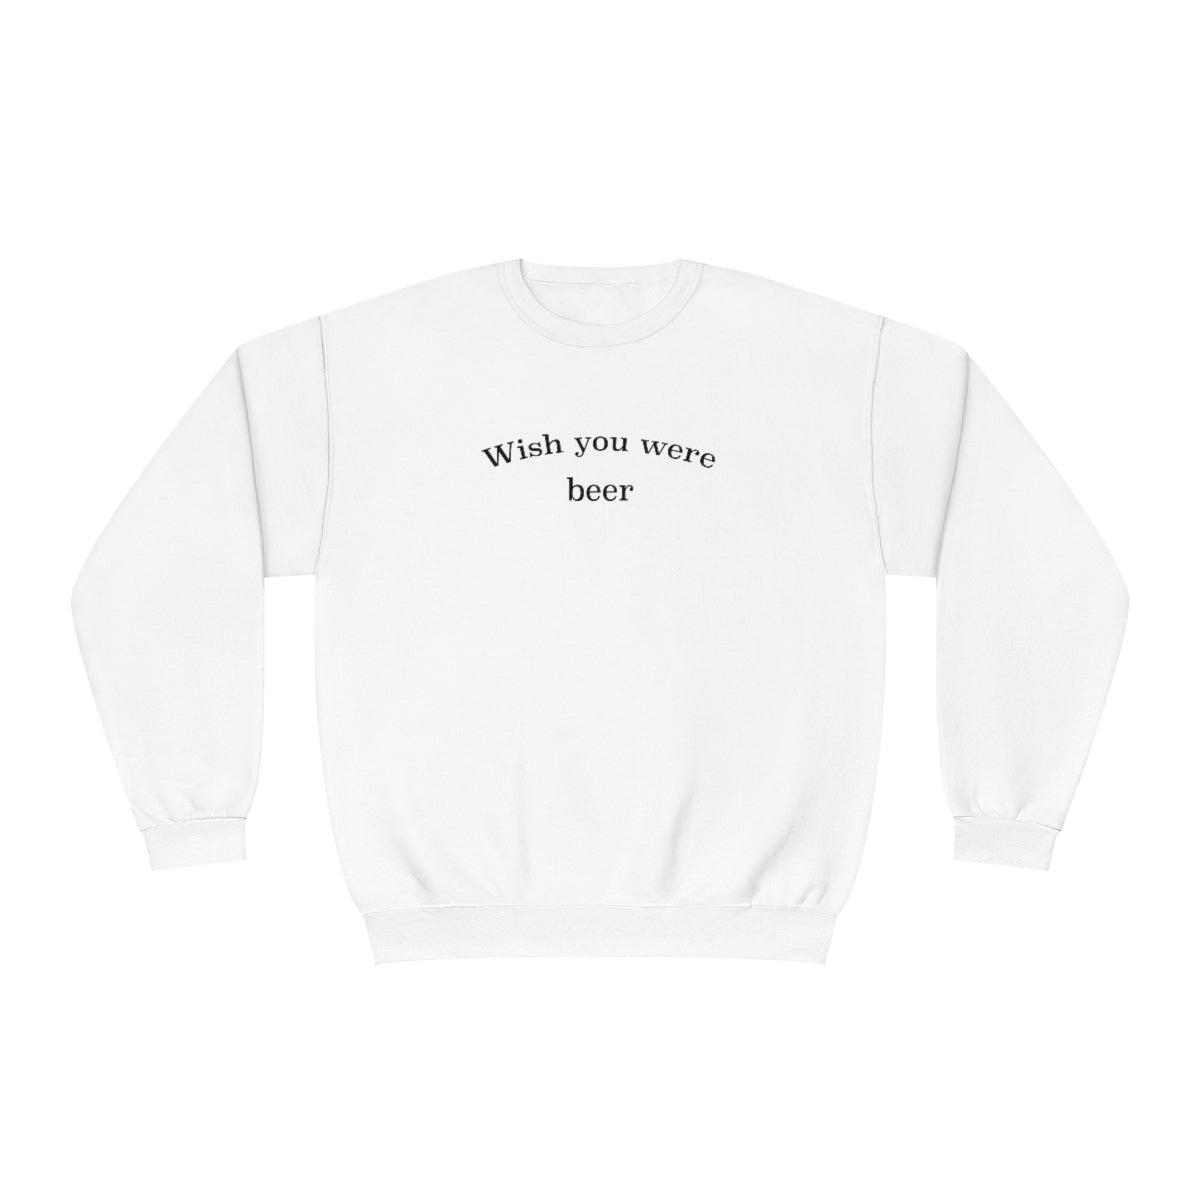 "Wish You Were Beer" Sweatshirt